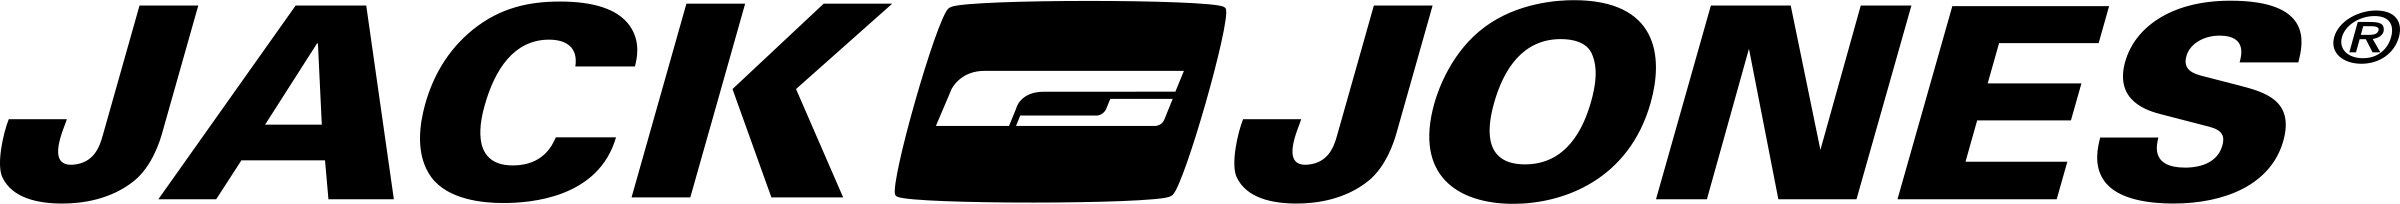 Jack & Jones Logo PNG Transparent & SVG Vector.